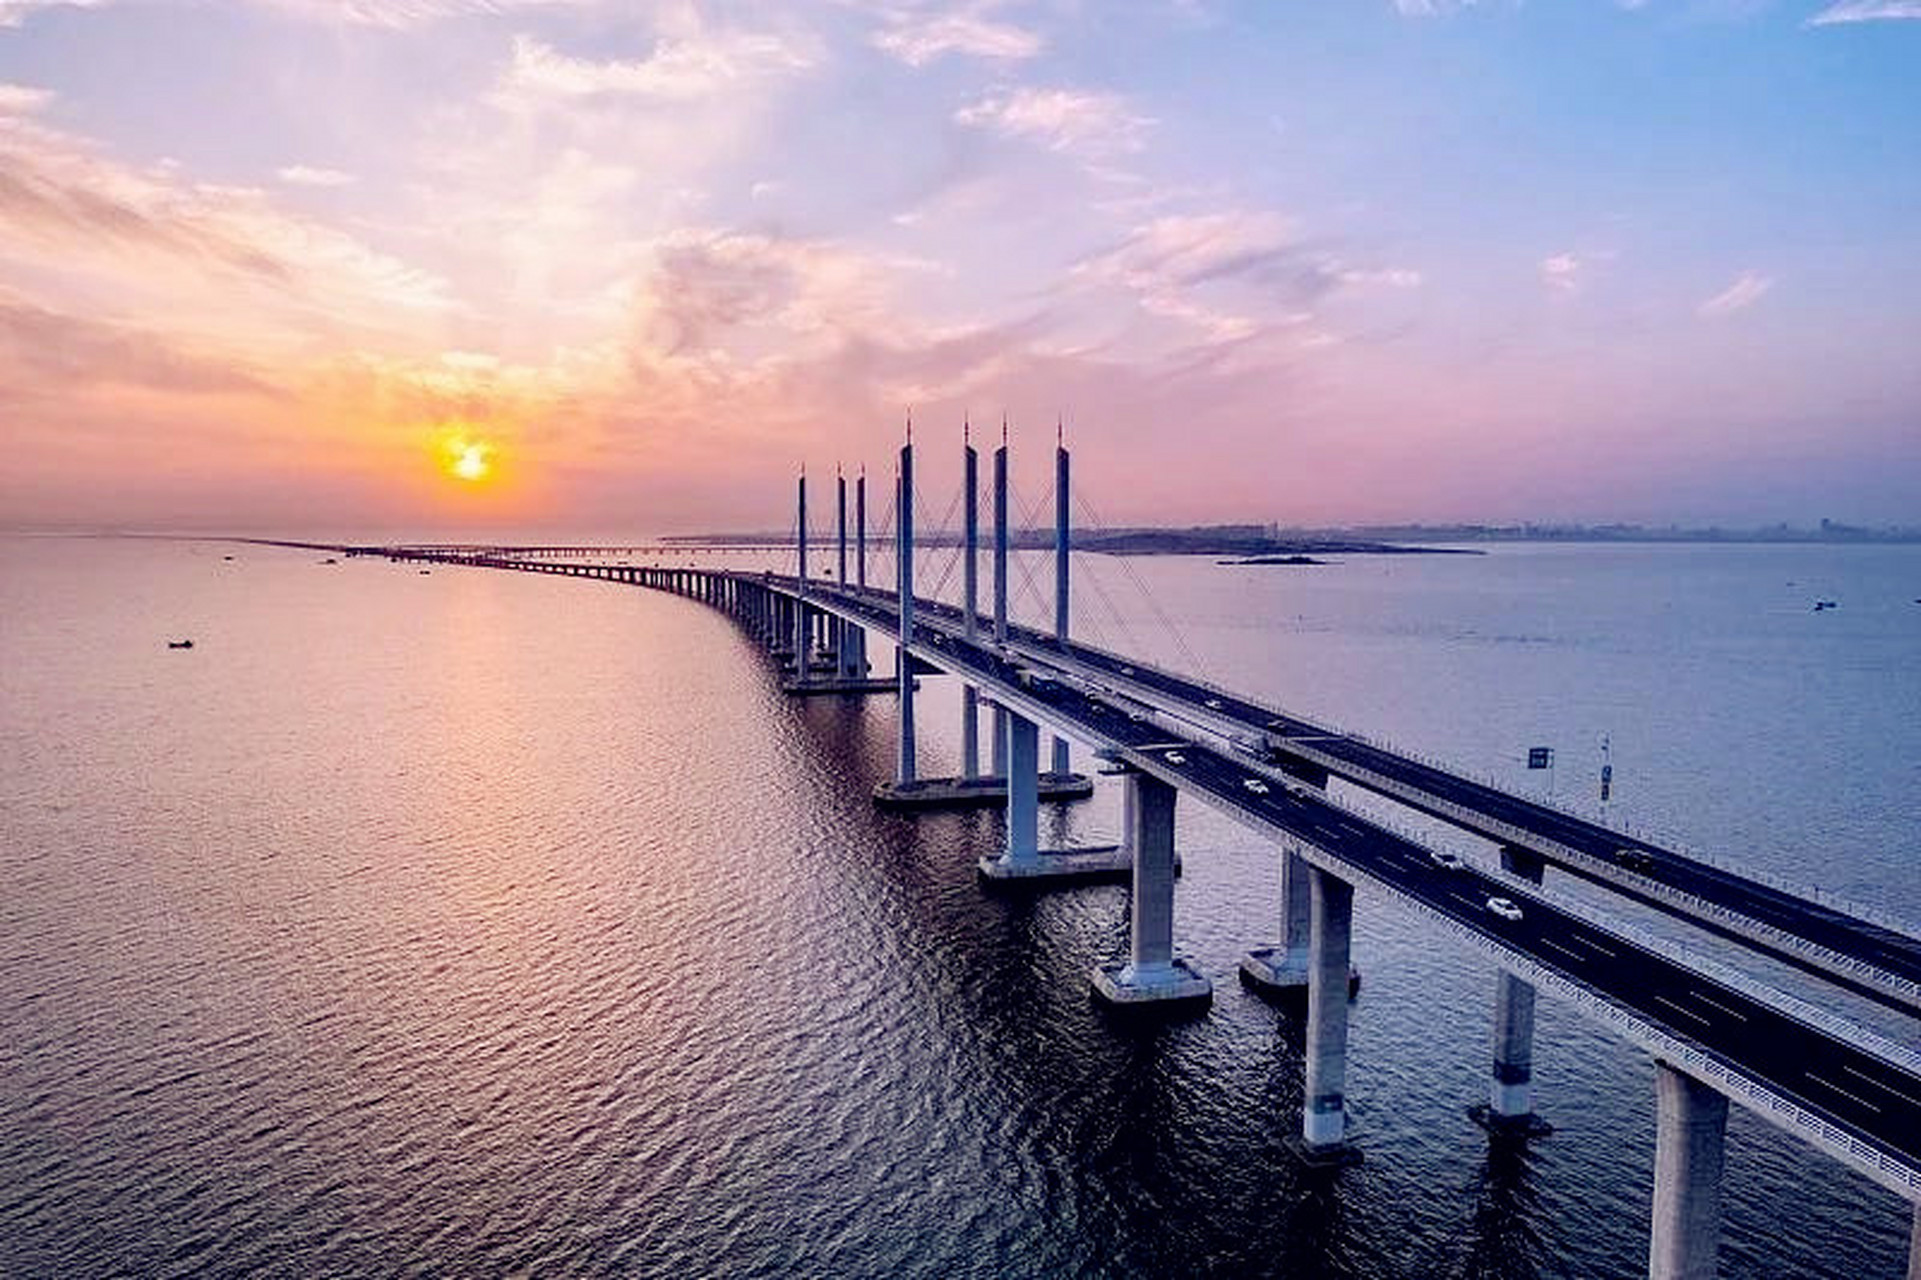 胶州湾跨海大桥,让你目瞪口呆的伟大工程  最美青岛,青岛胶州湾跨海